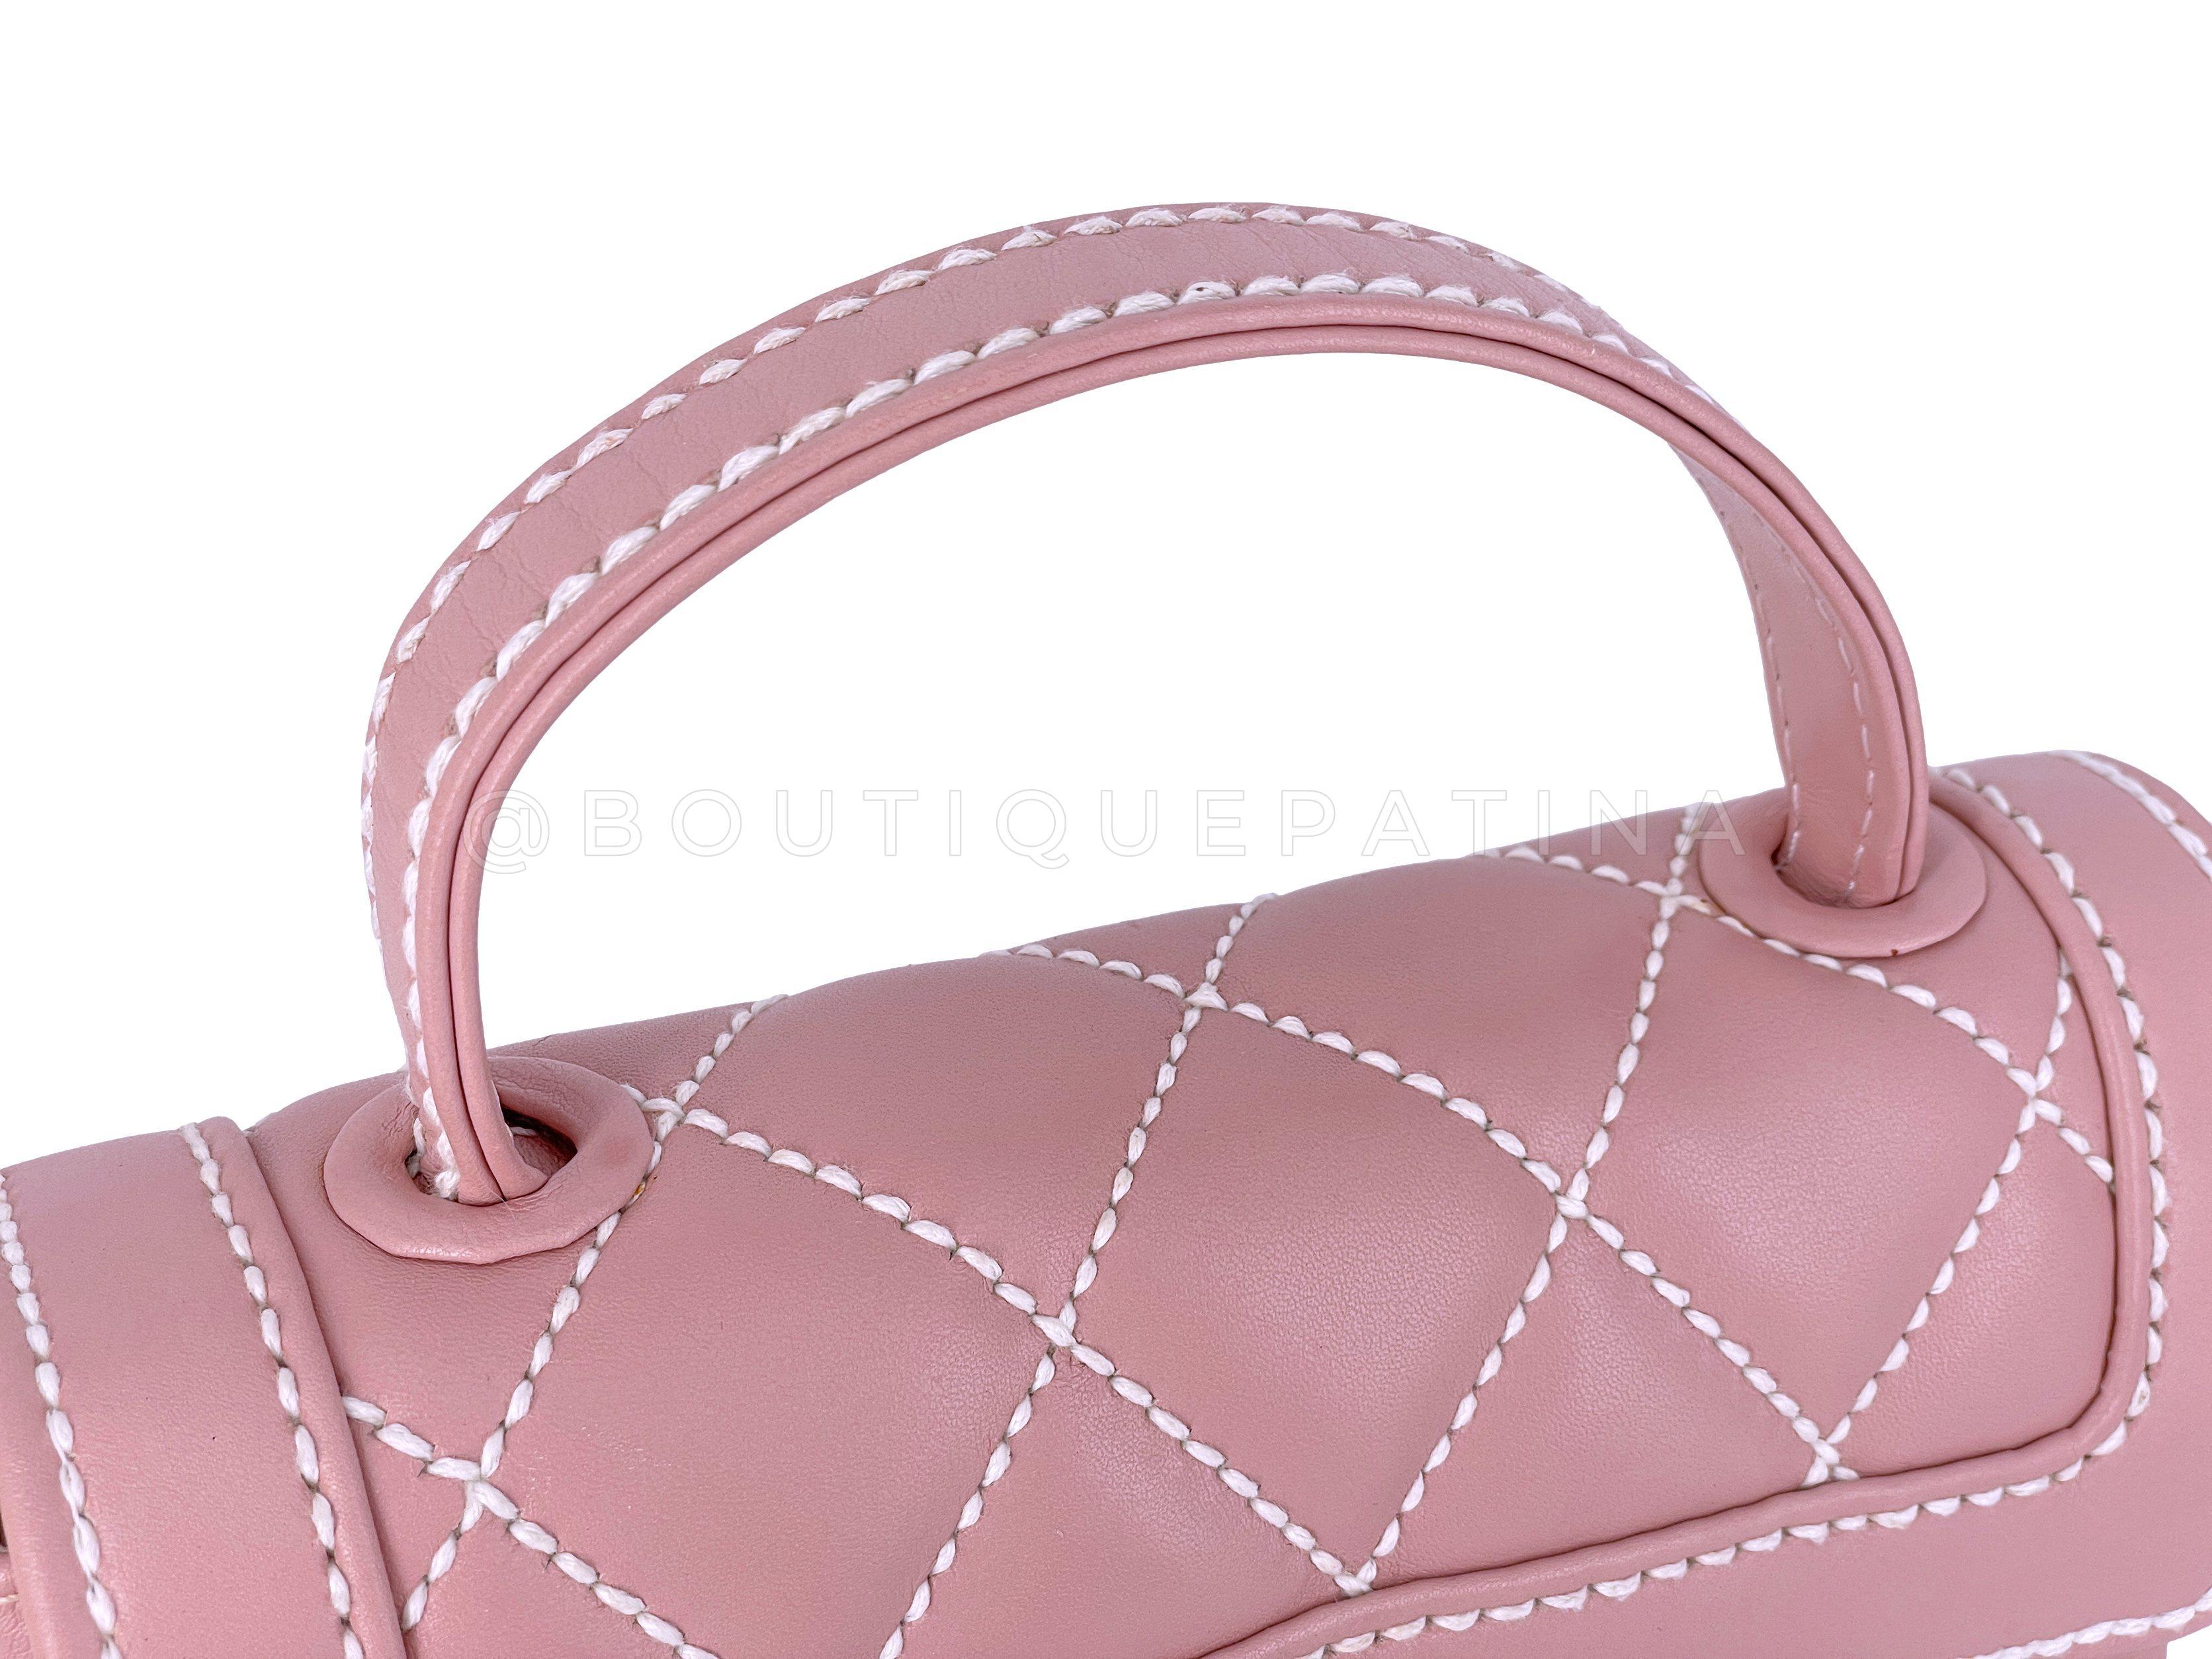 Rare Chanel Mauve Pink Wild Stitch Surpique Baby Flap Bag 66463 For Sale 6